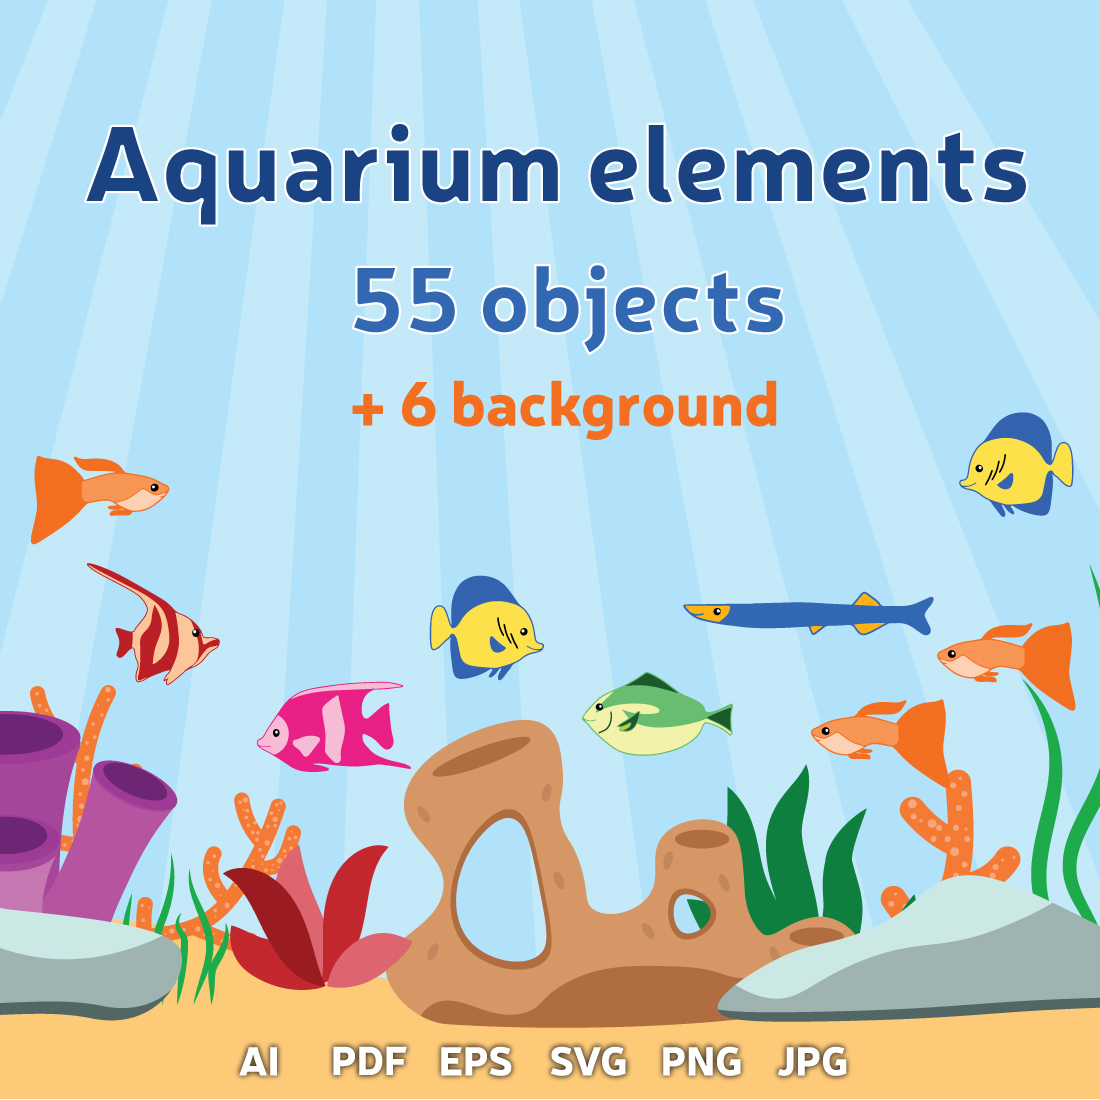 Aquarium elements cover image.